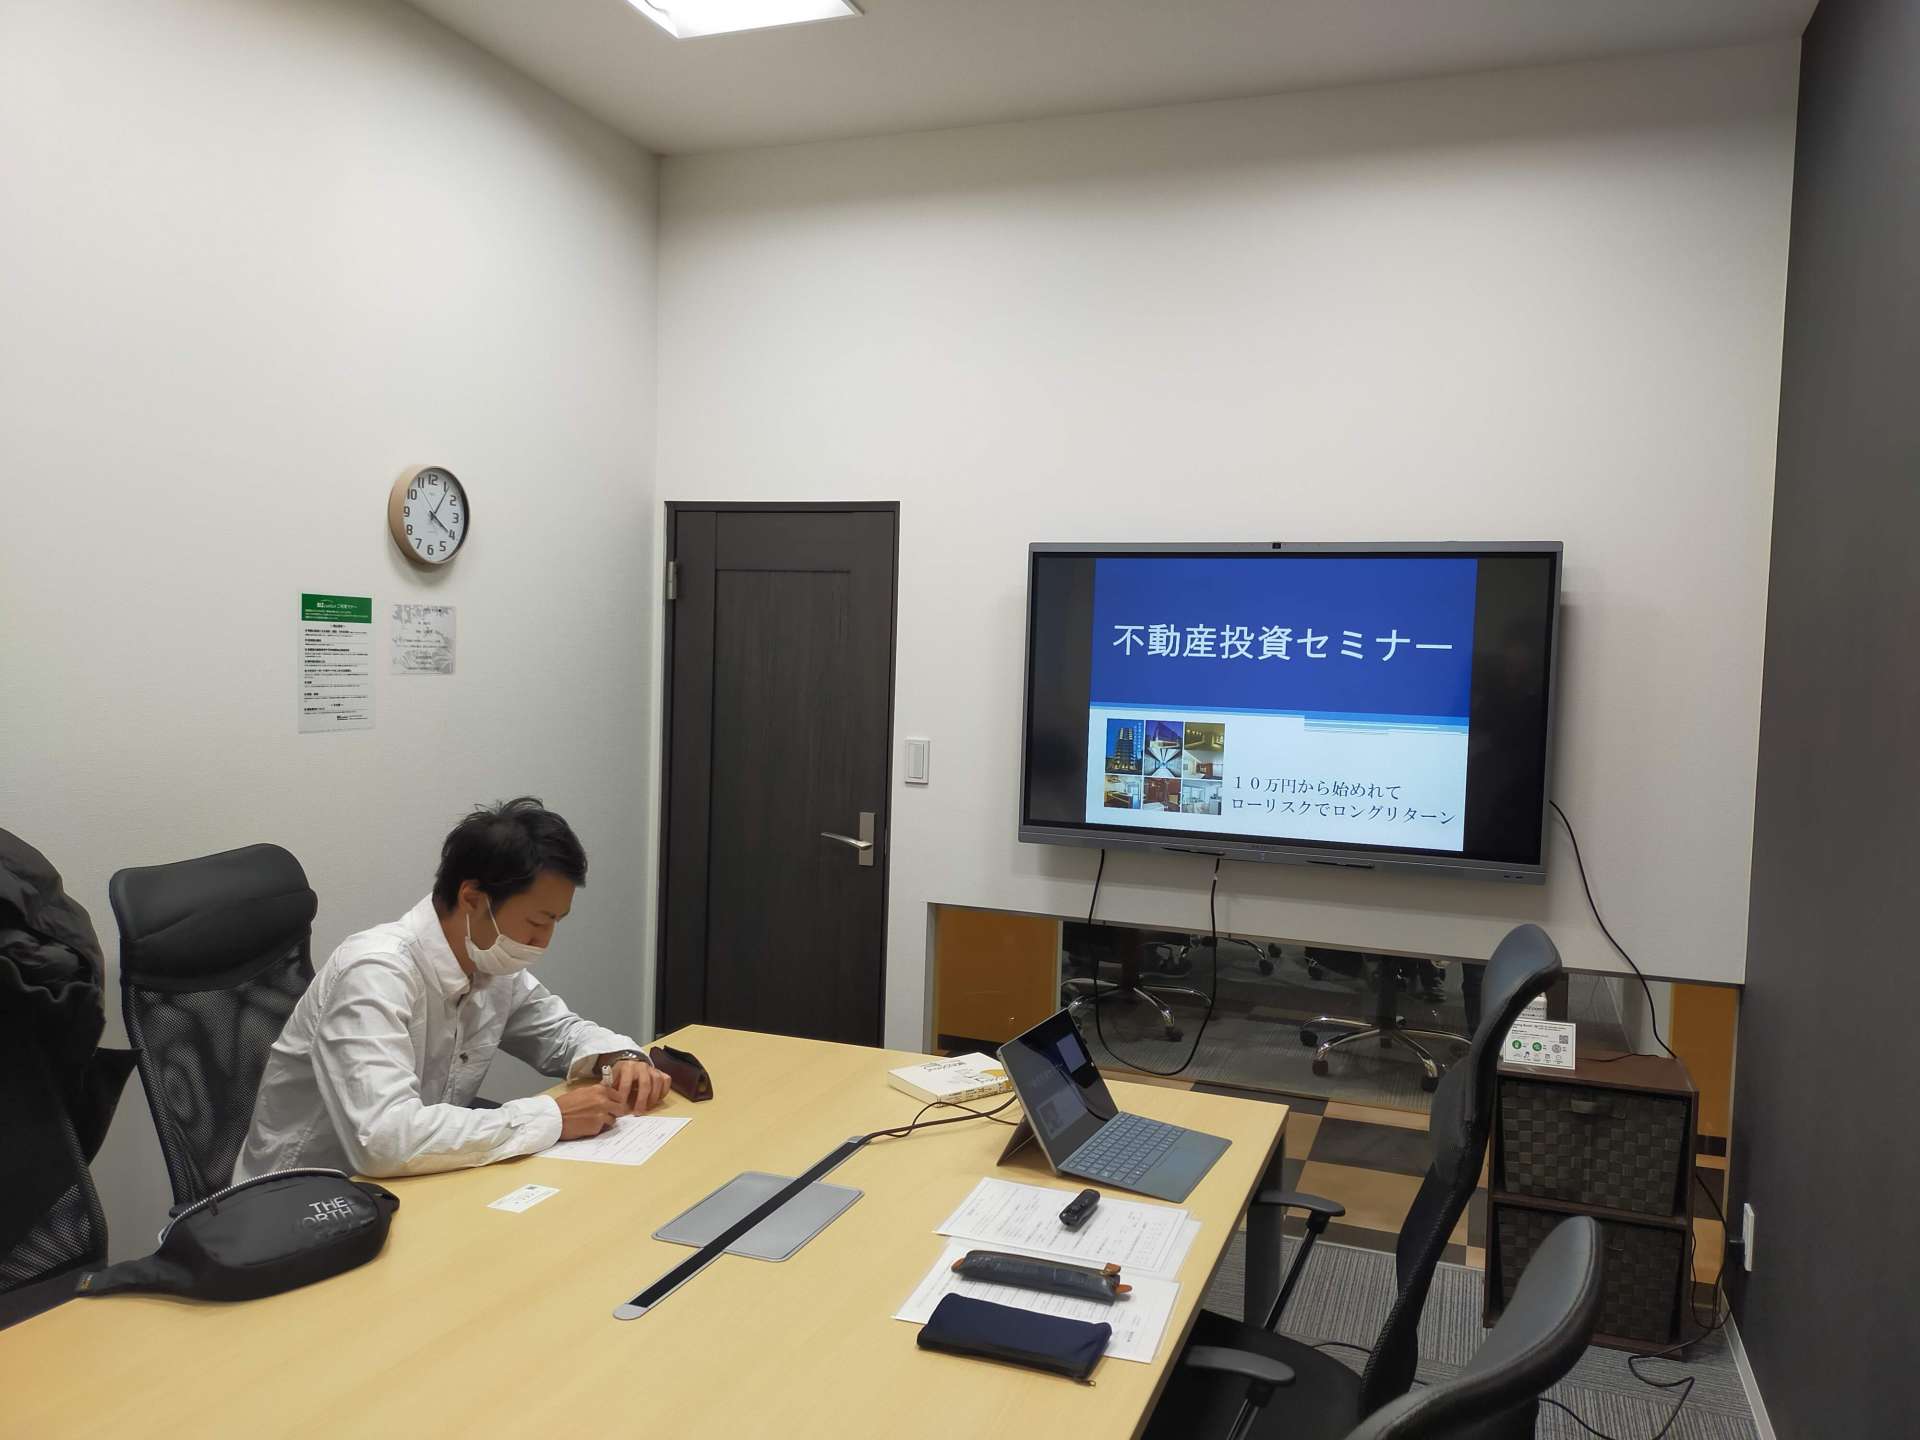 静岡で不動産投資セミナーを開催